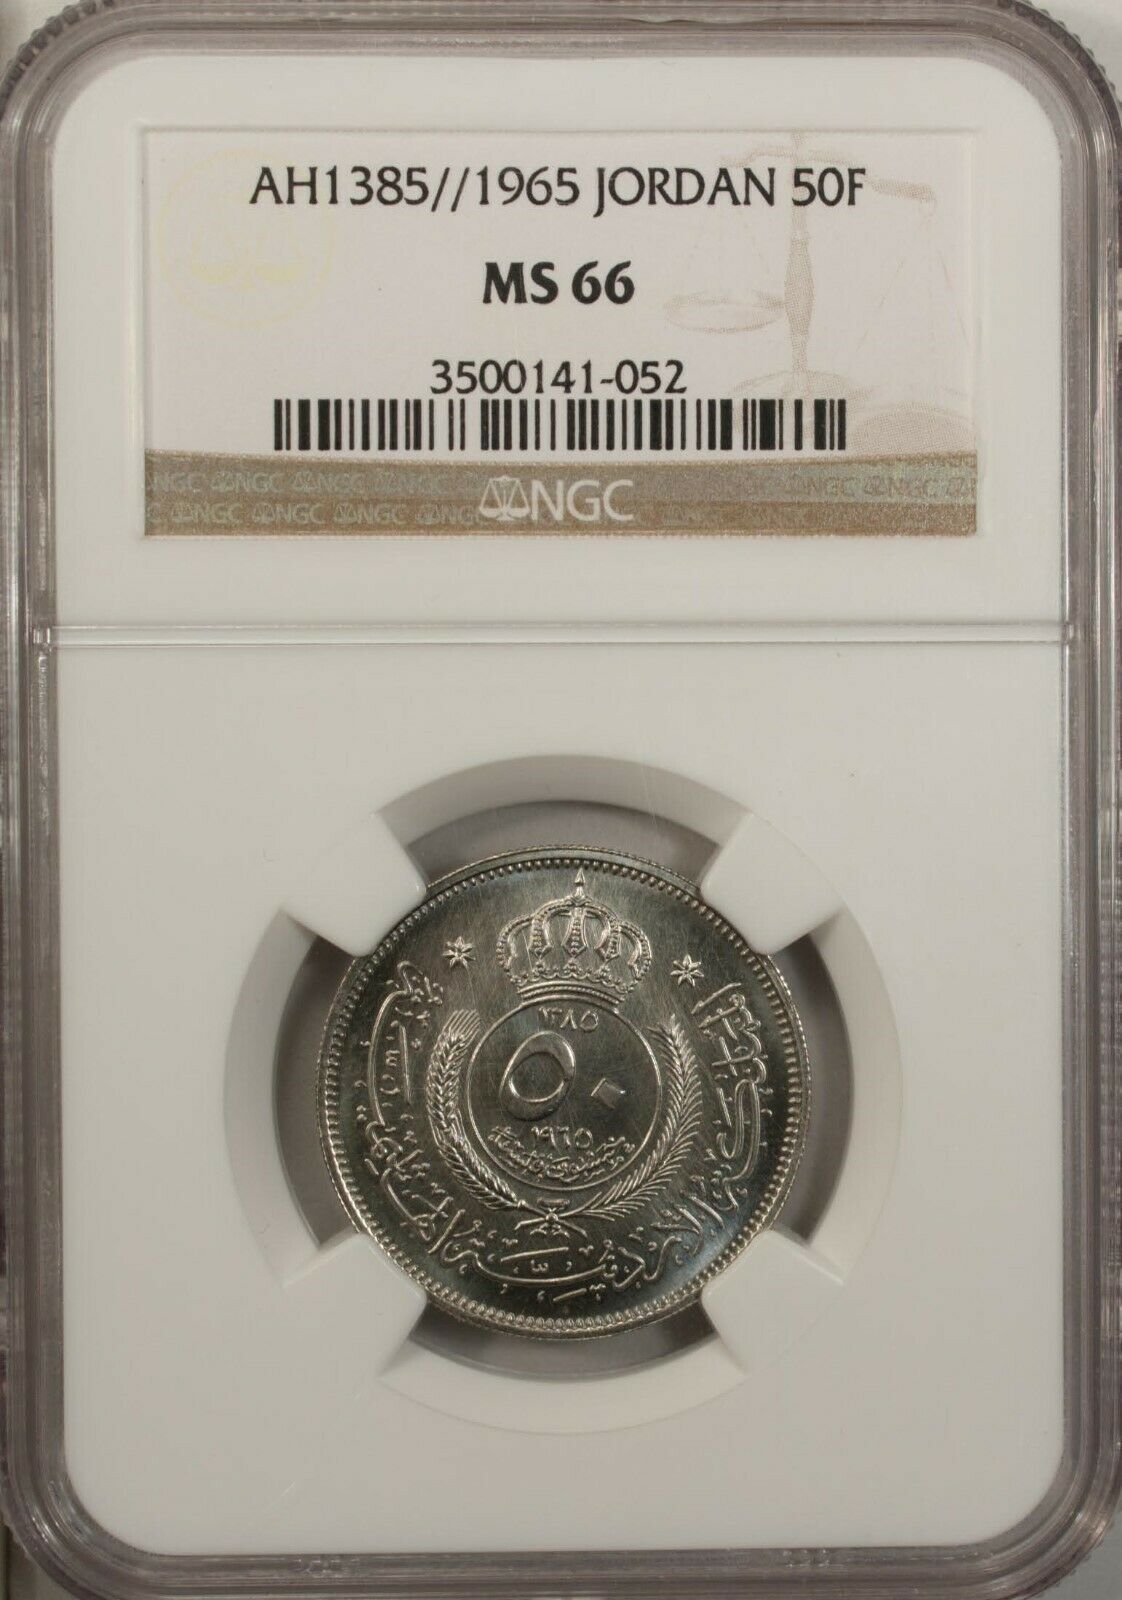 Jordan 50 Fils 1965  Ngc Ms 66 Unc Copper Nickel  High Grade